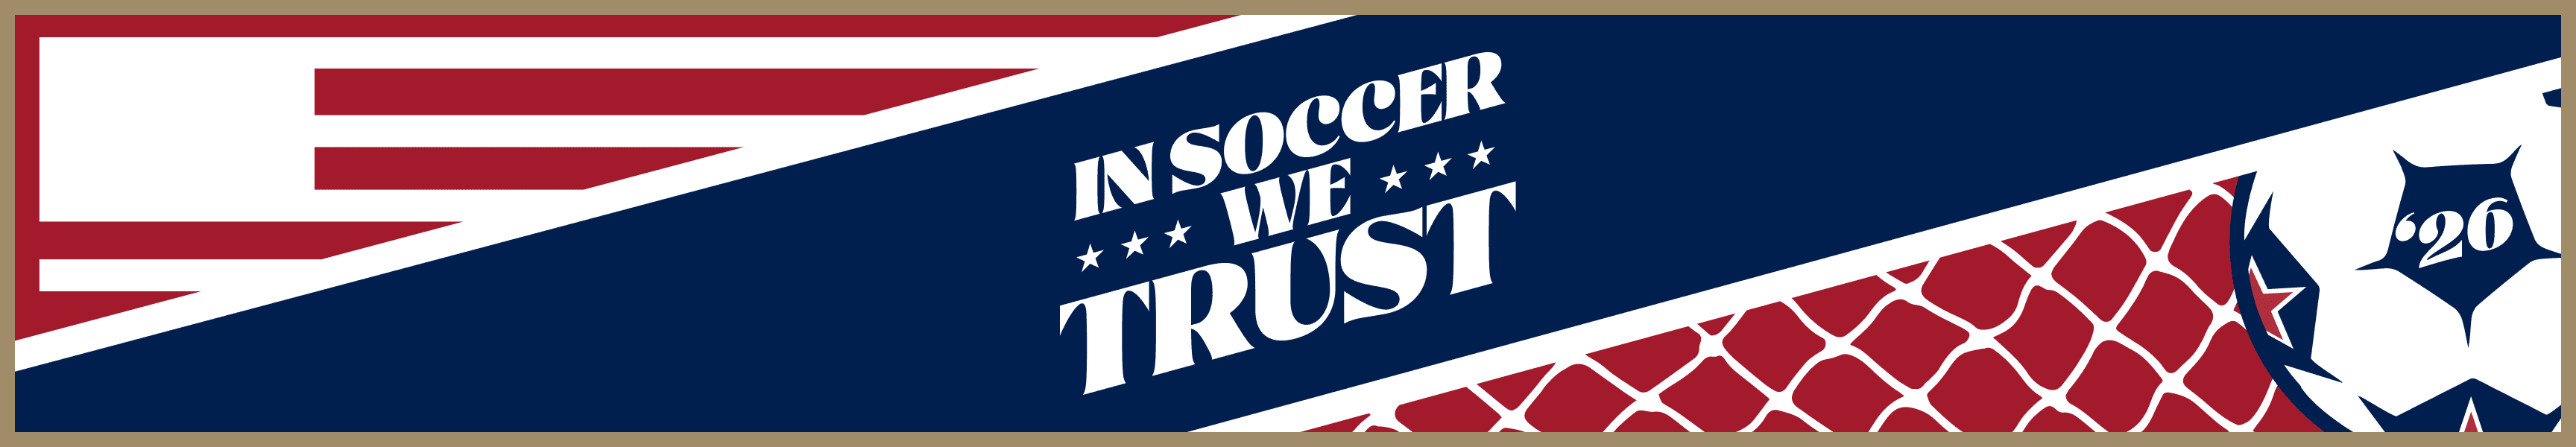 In Soccer We Trust